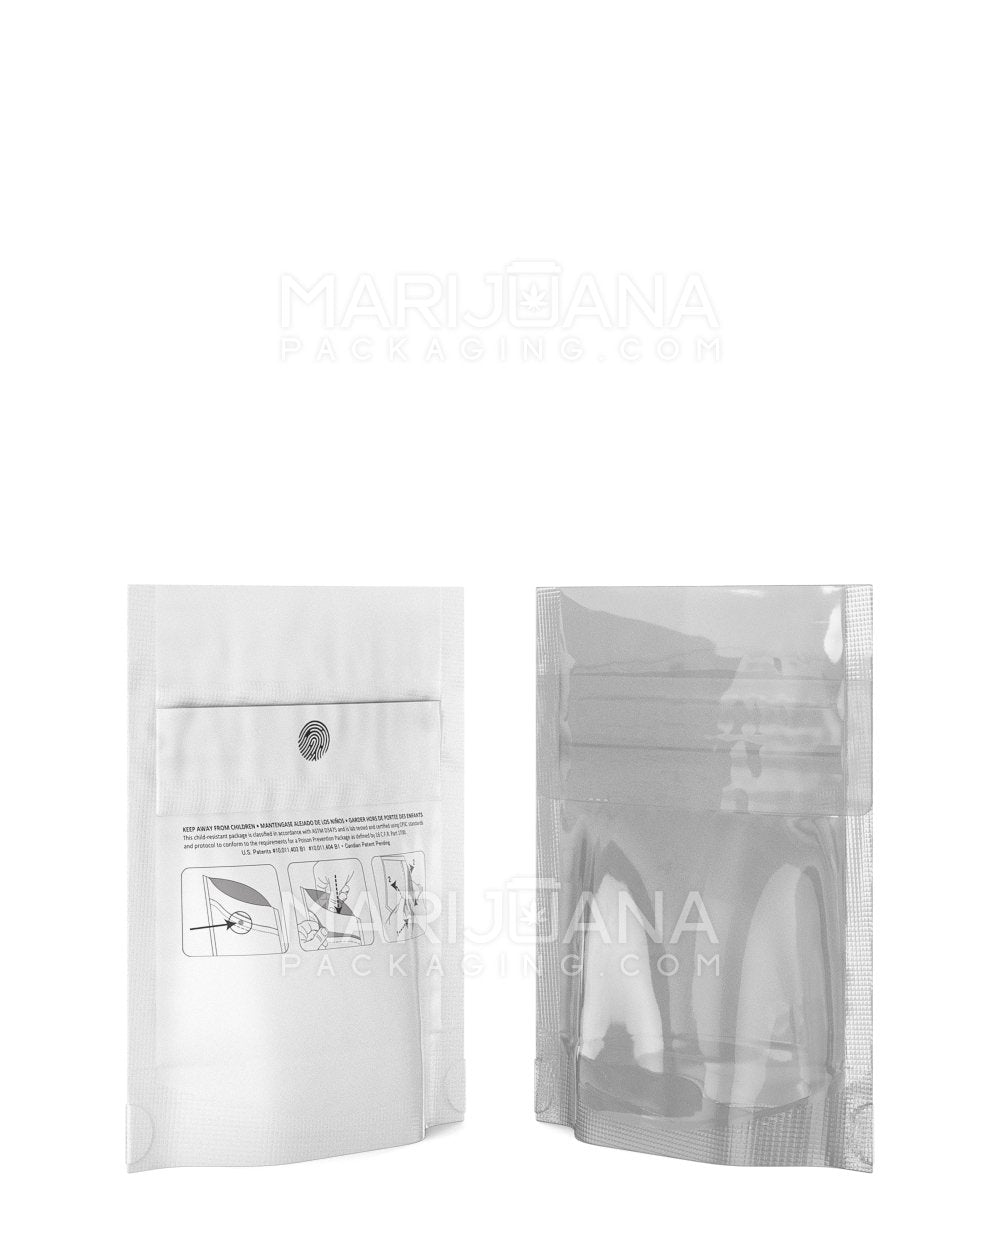 Child Resistant & Tamper Evident DymaPak White Vista Mylar Bag | 3.6in x 4.5in - 1g | Sample - 2